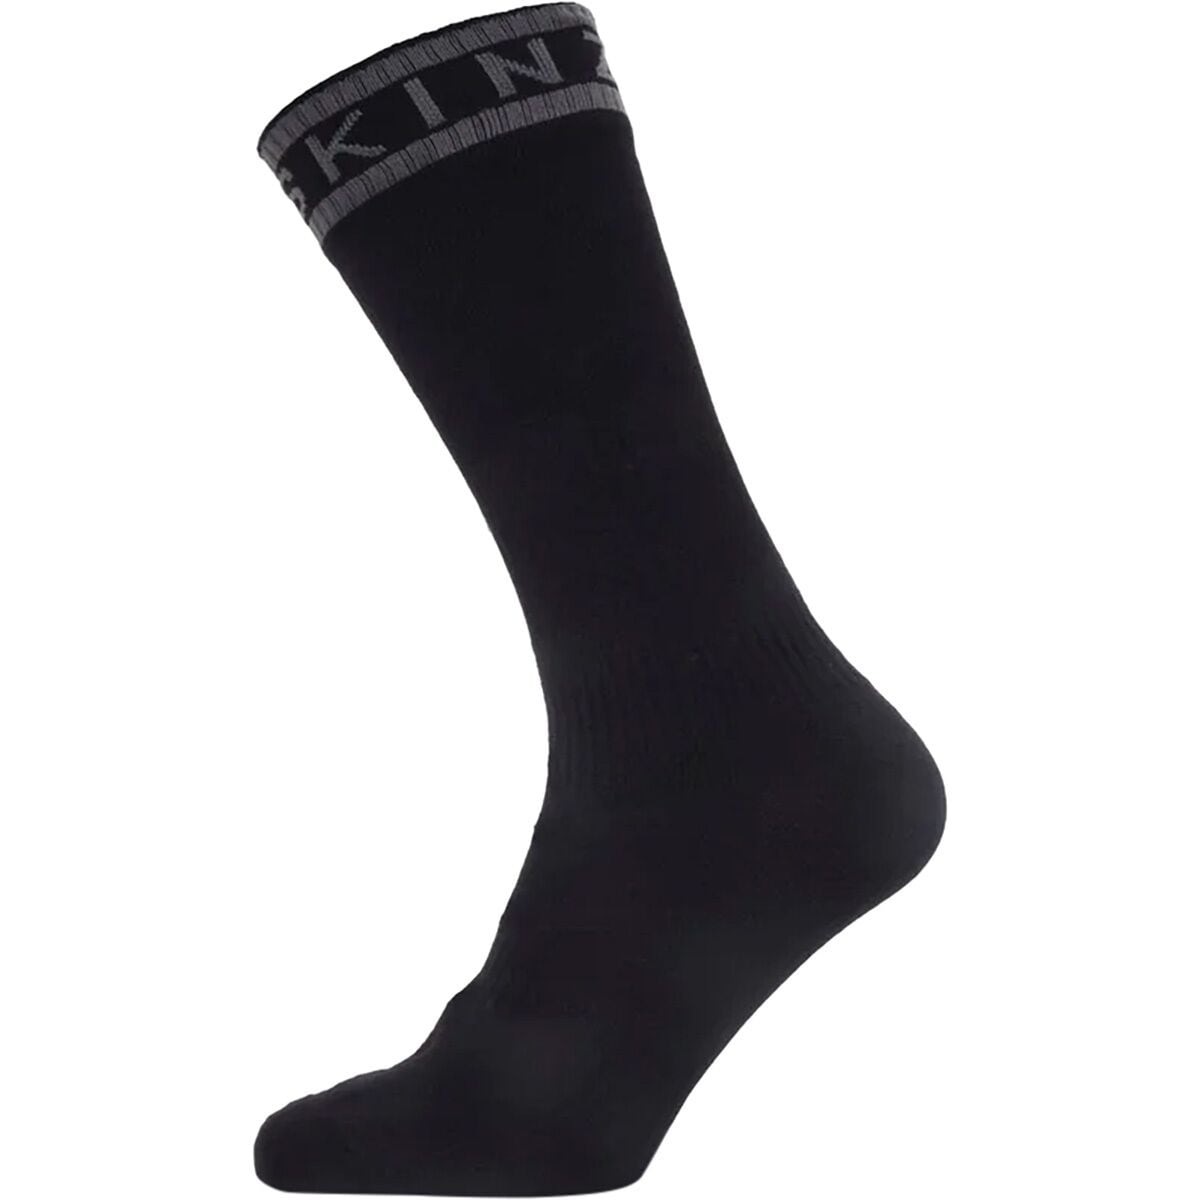 SealSkinz Scoulton Waterproof Warm Weather Mid-Length Hydrostop Sock - Men's